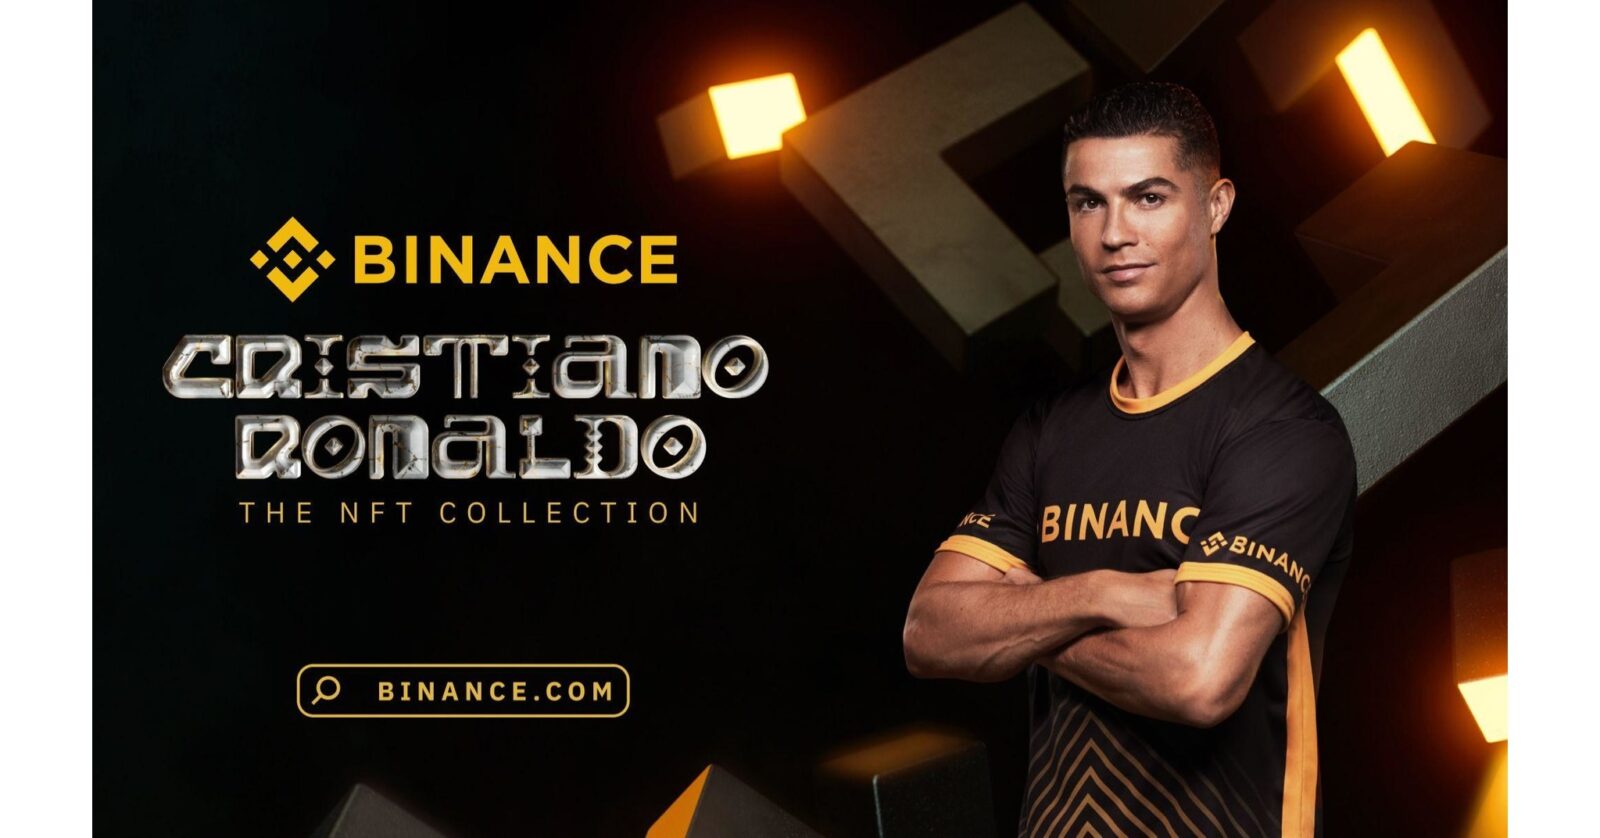 Binance объявляет о партнерстве с Криштиану Роналду: скоро появится коллекция NFT